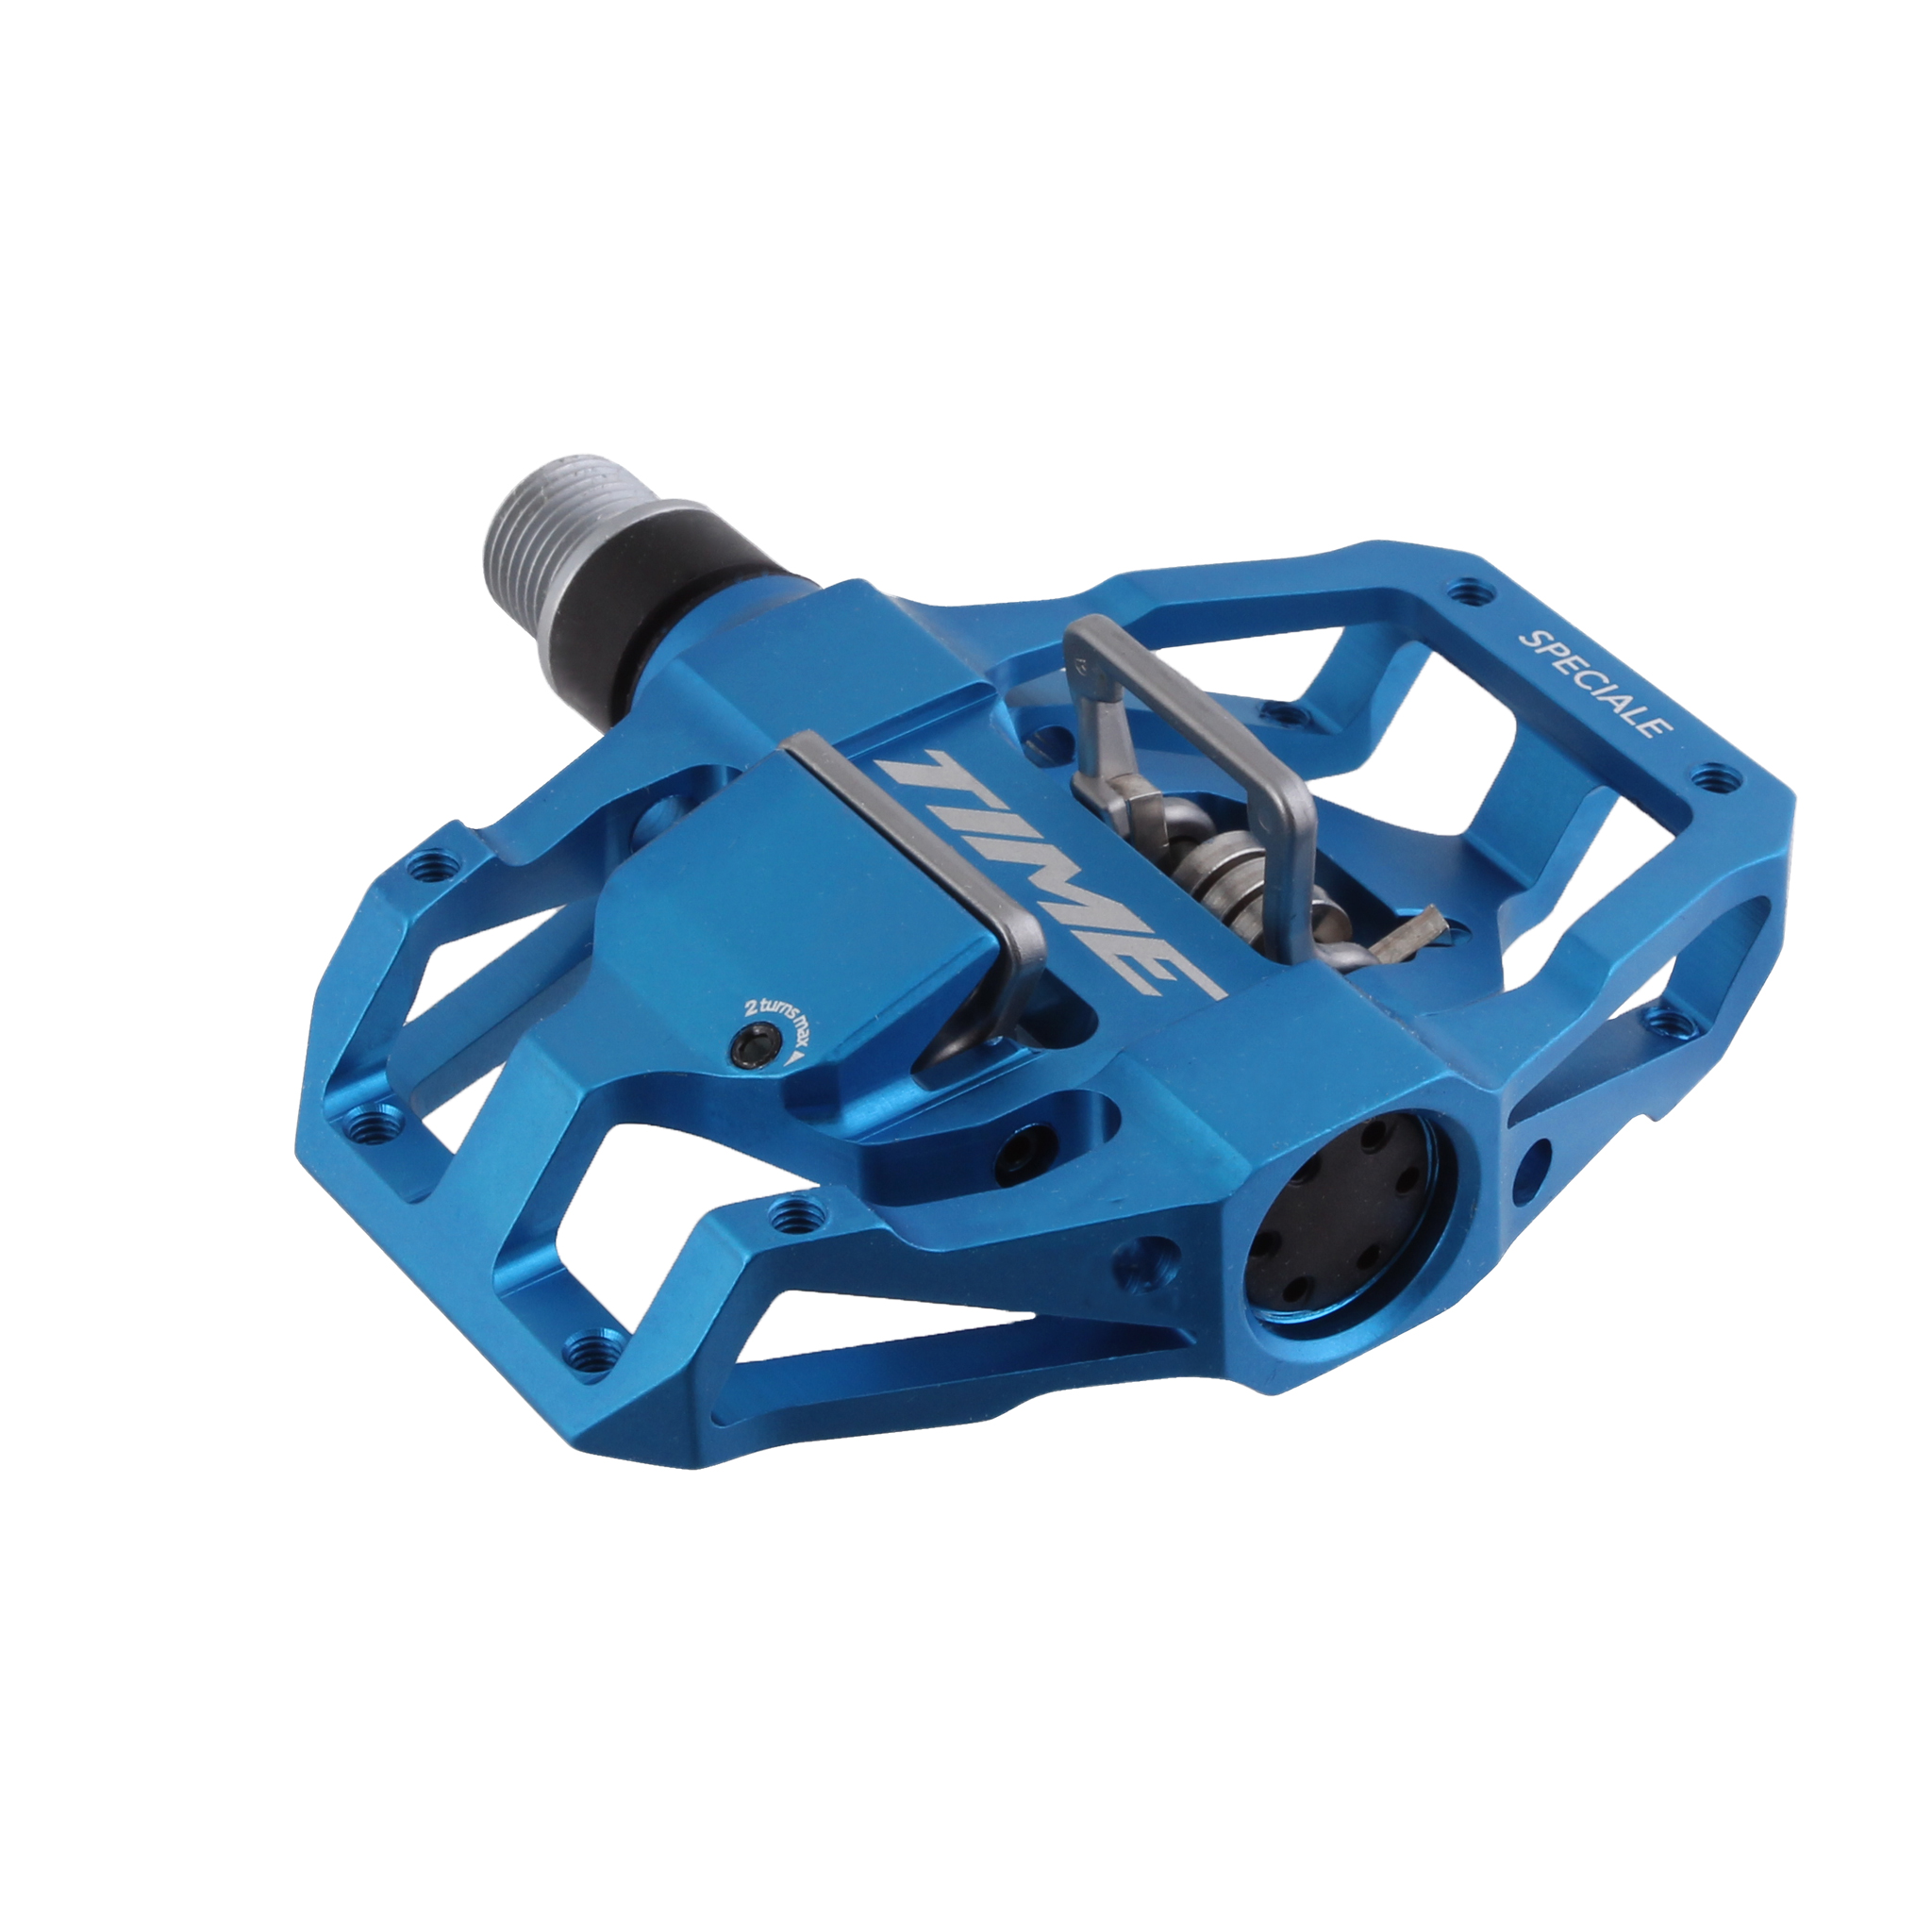 Speciale 12 ATAC Pedals, Blue - Afbeelding 1 van 1